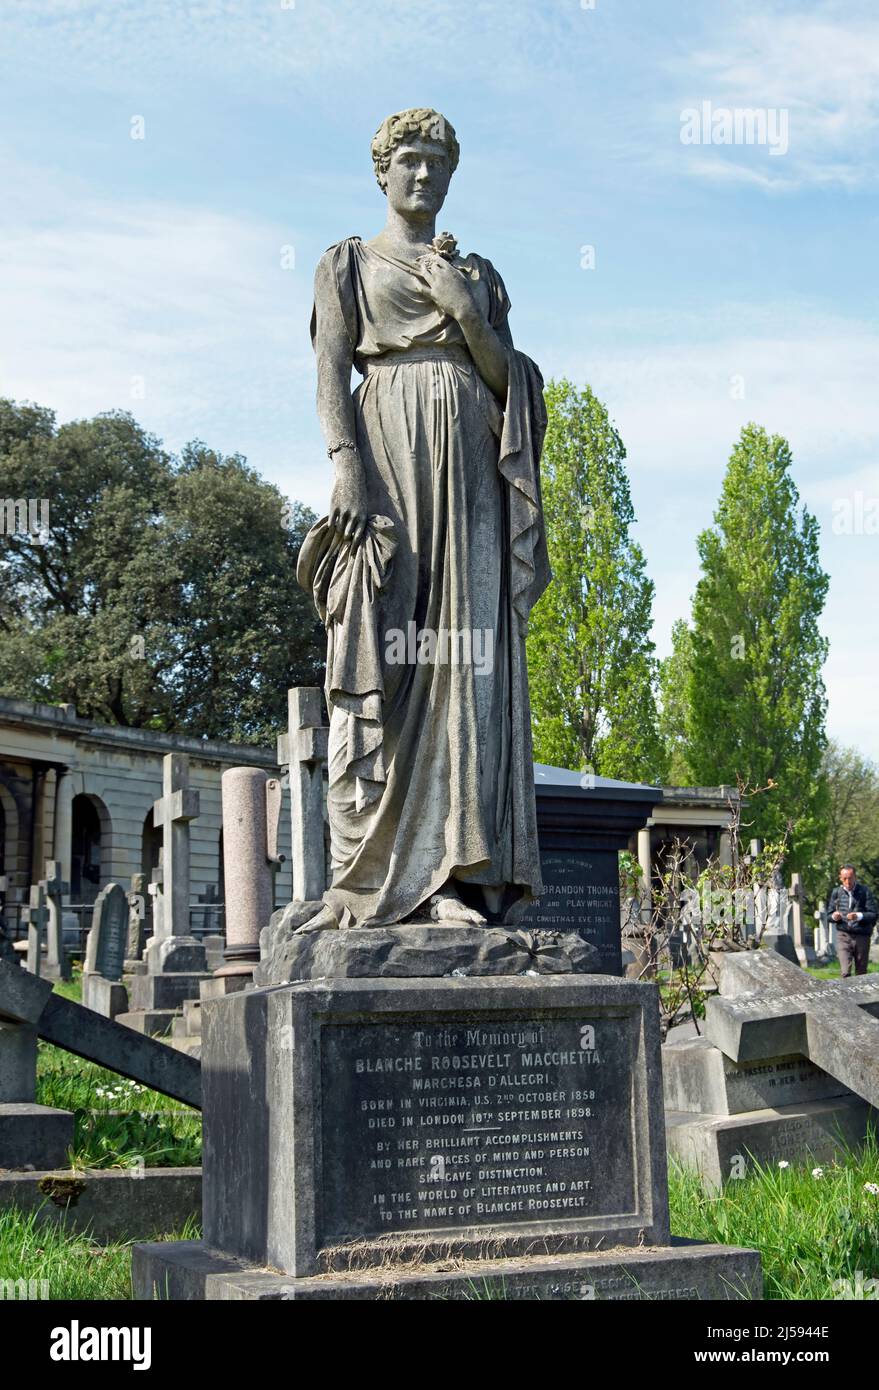 el monumento de mármol italiano de 1898 que marca la tumba de la cantante de ópera, blanche roosevelt macchetta, cementerio de brompton, londres, inglaterra Foto de stock